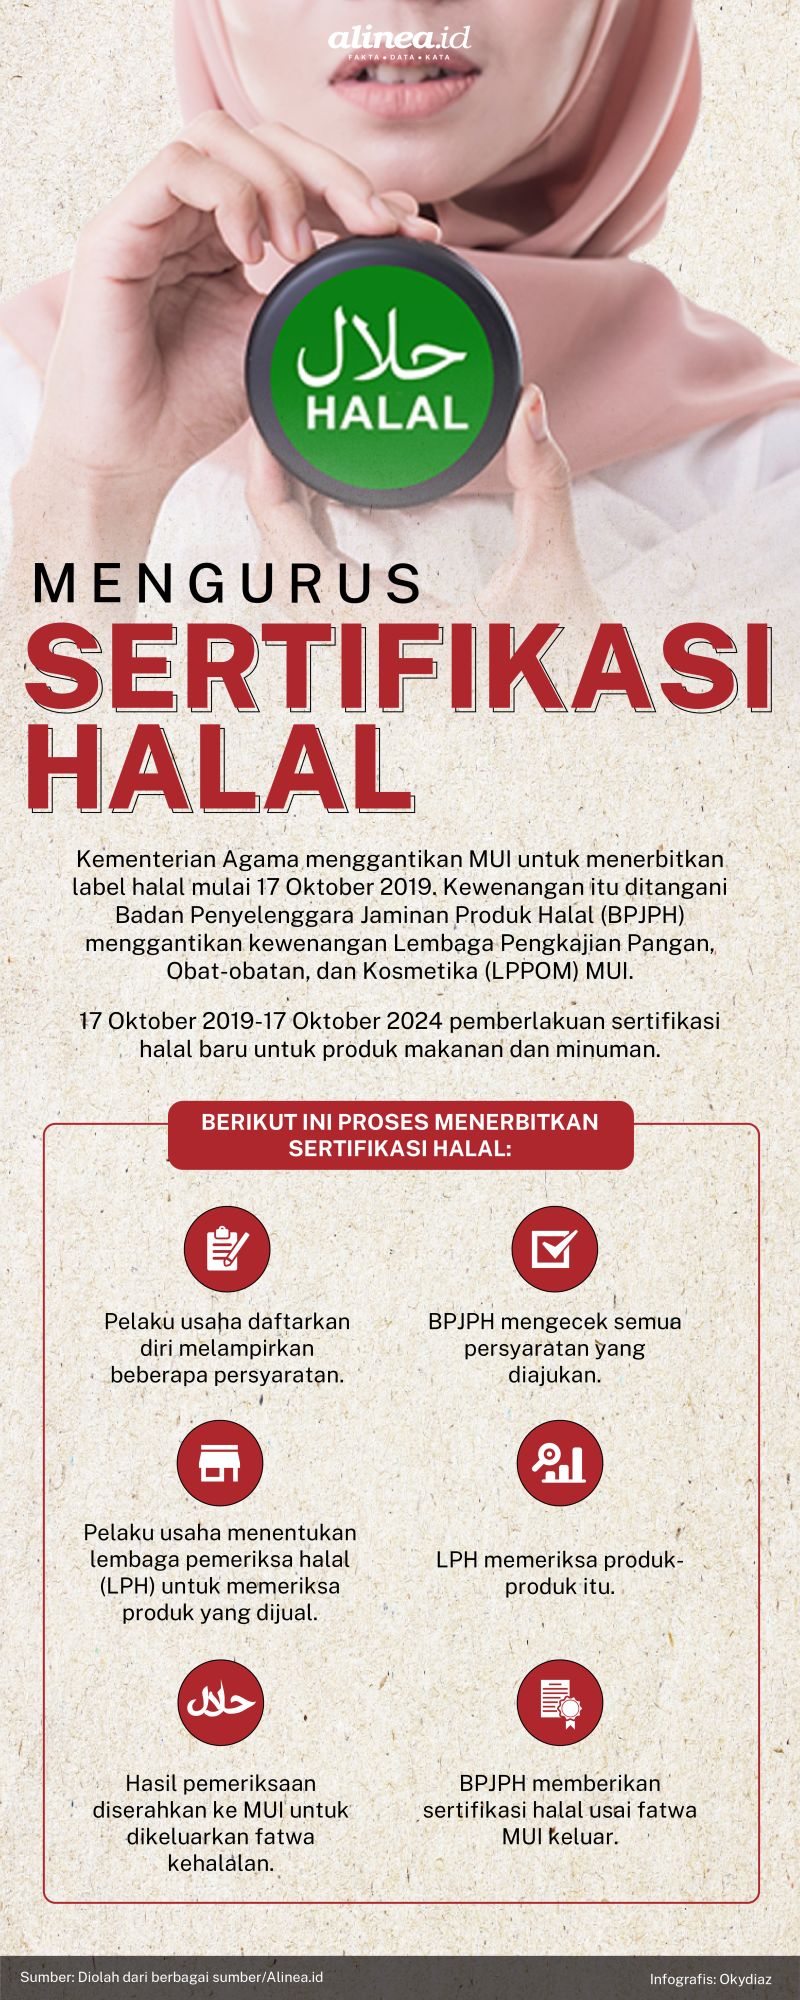 Sertifikasi halal berimplikasi terhadap daya saing di pasar halal global. Alinea.id/Oky Diaz.